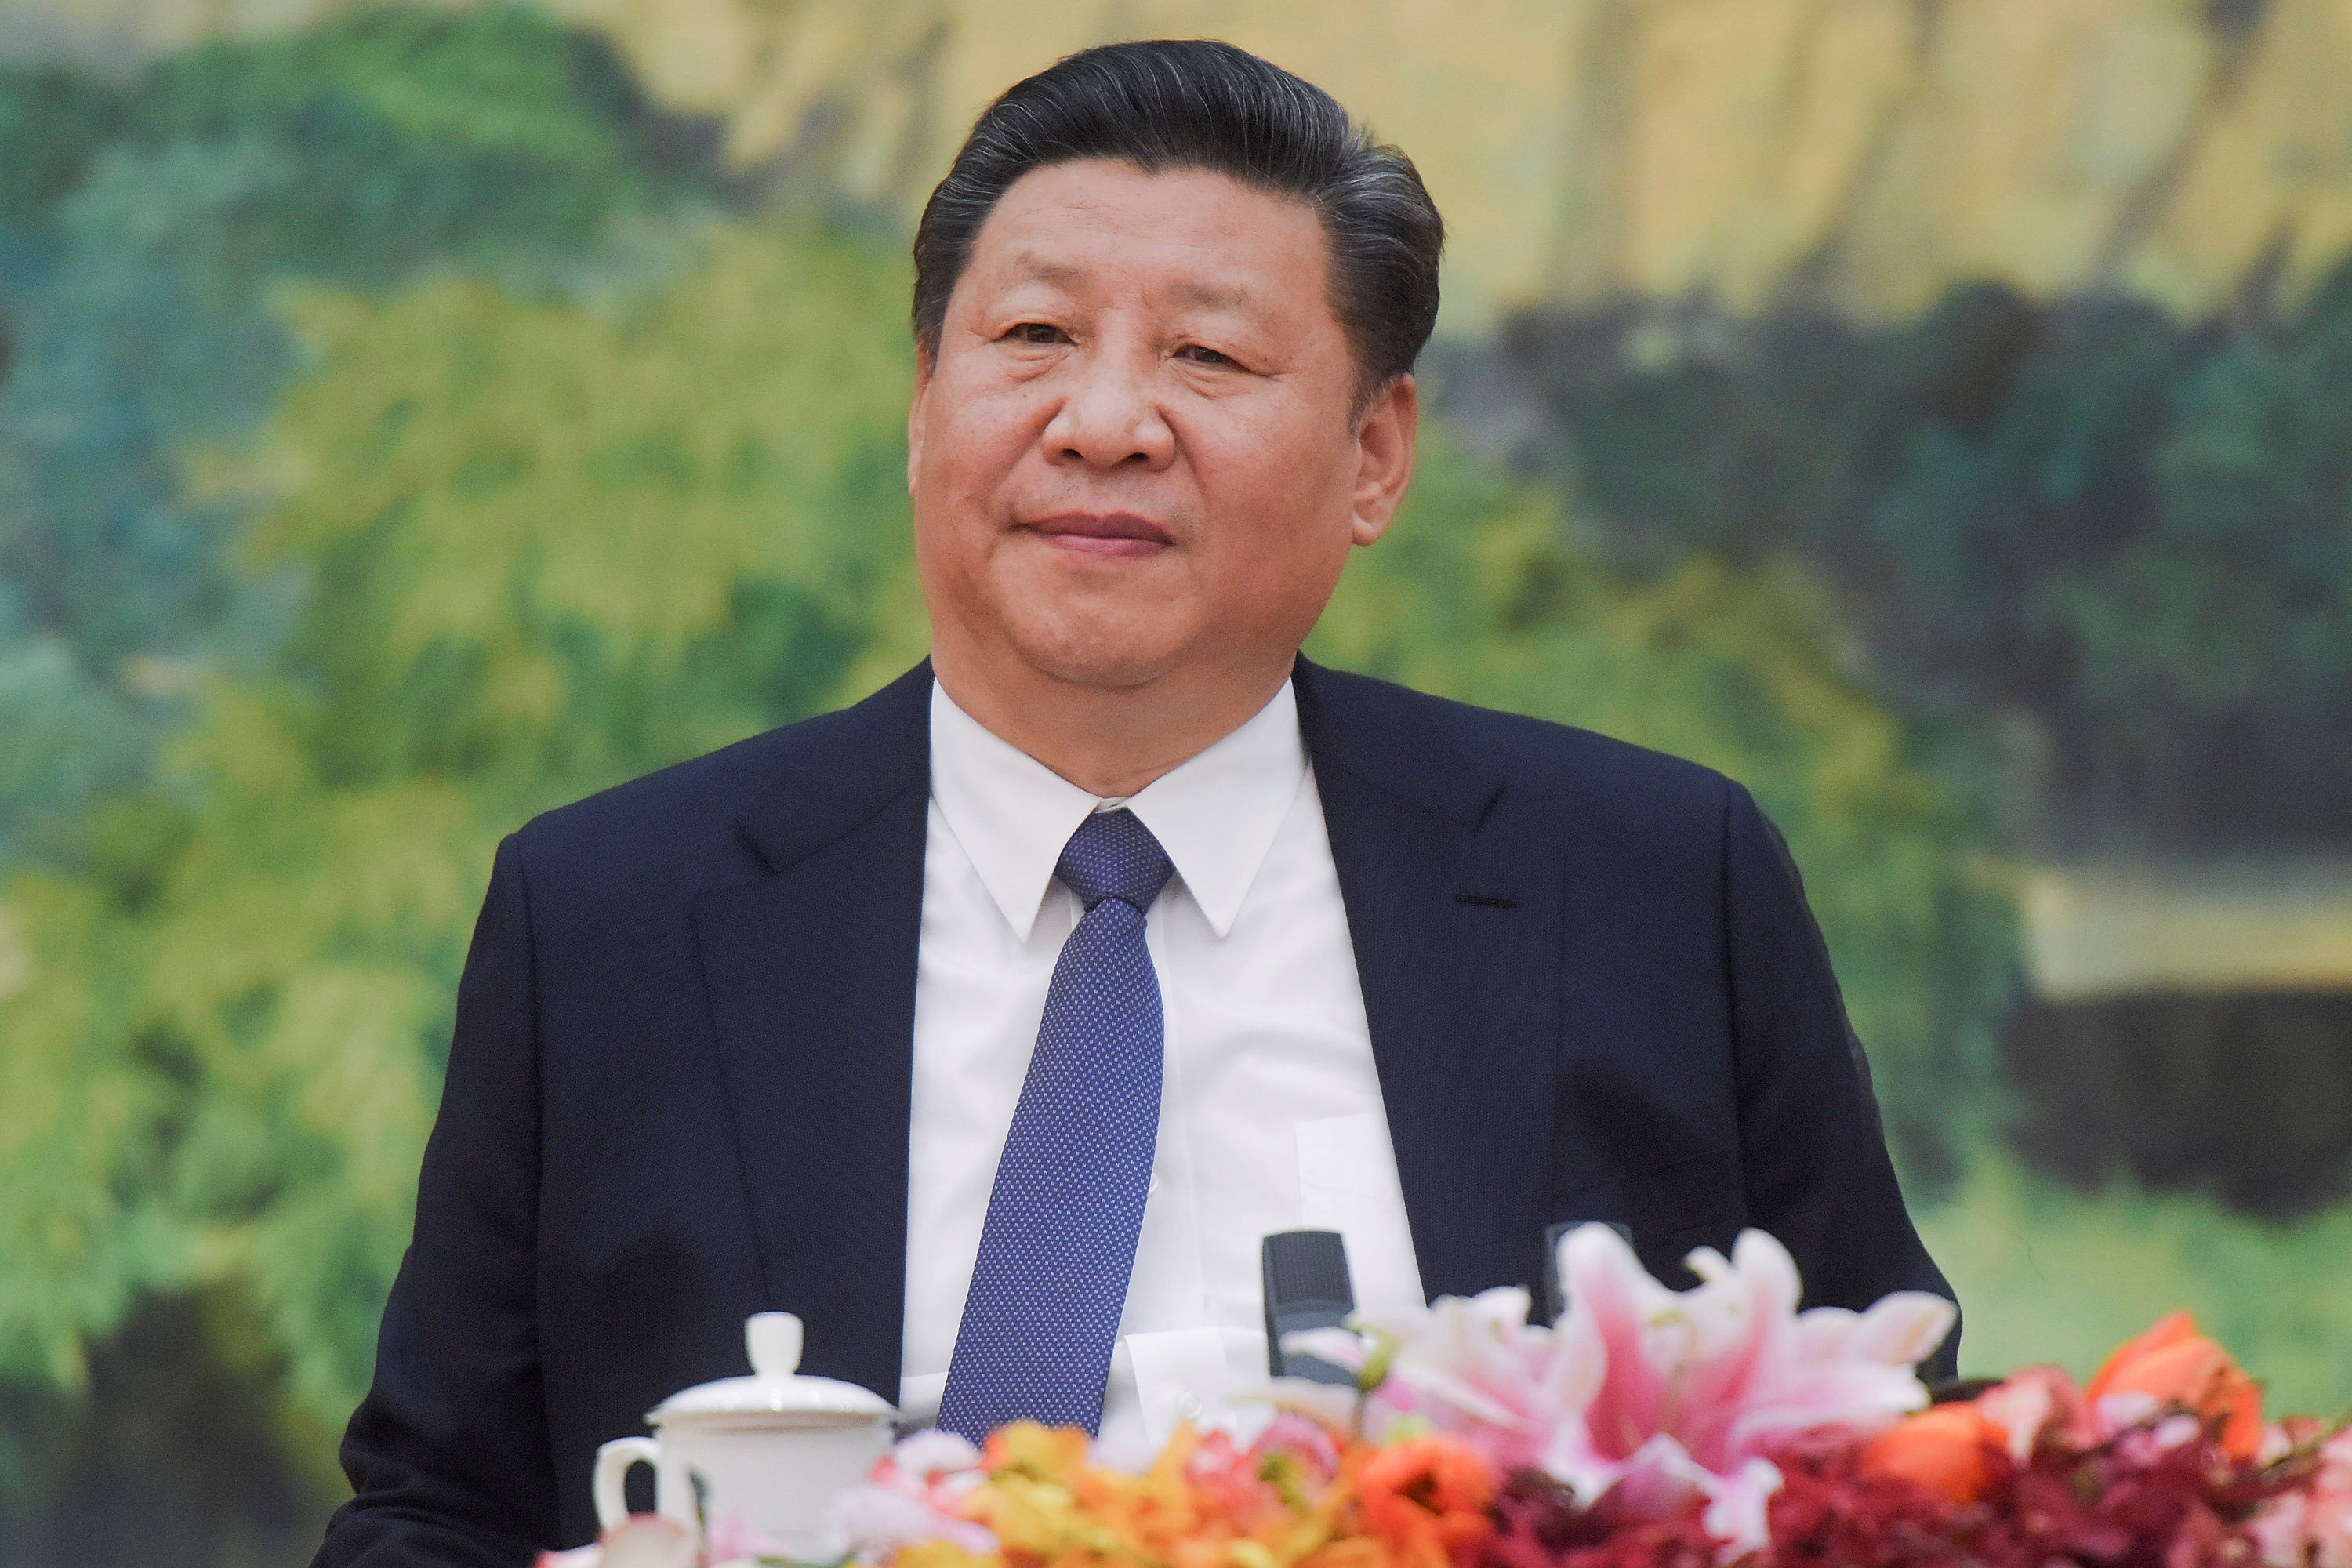 China to merge regulators, create new ministries